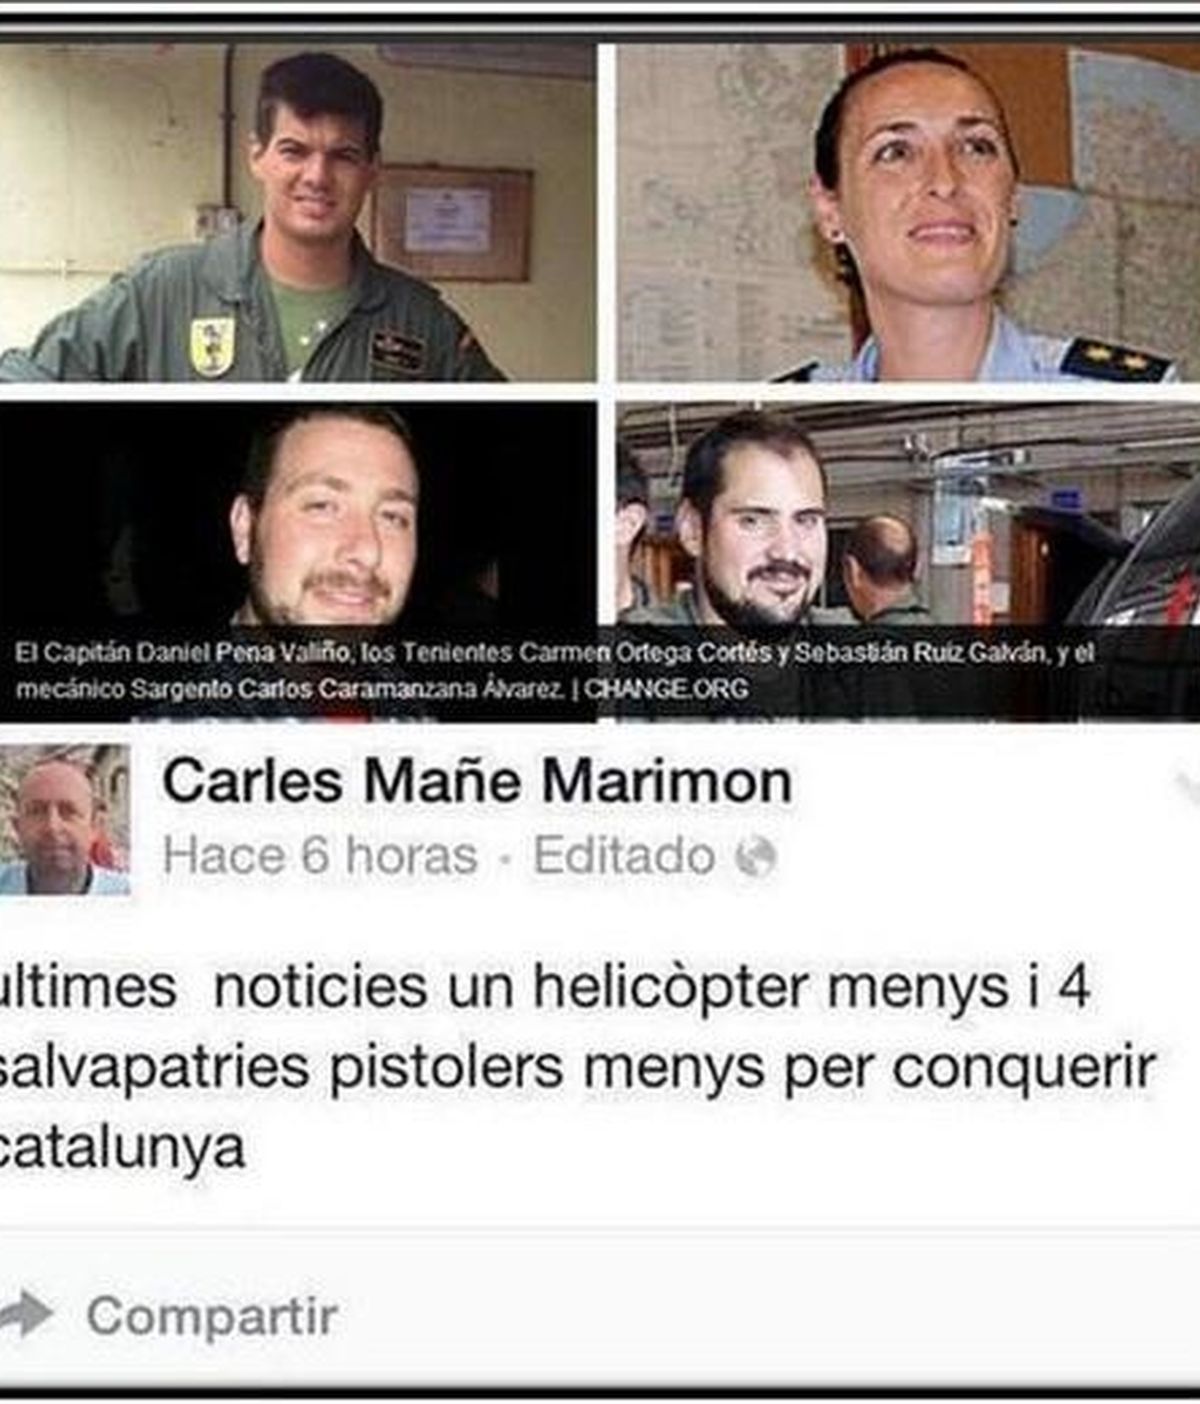 Tuit con comentarios ofensivos sobre la muerte de cuatro militares españoles en Canarias